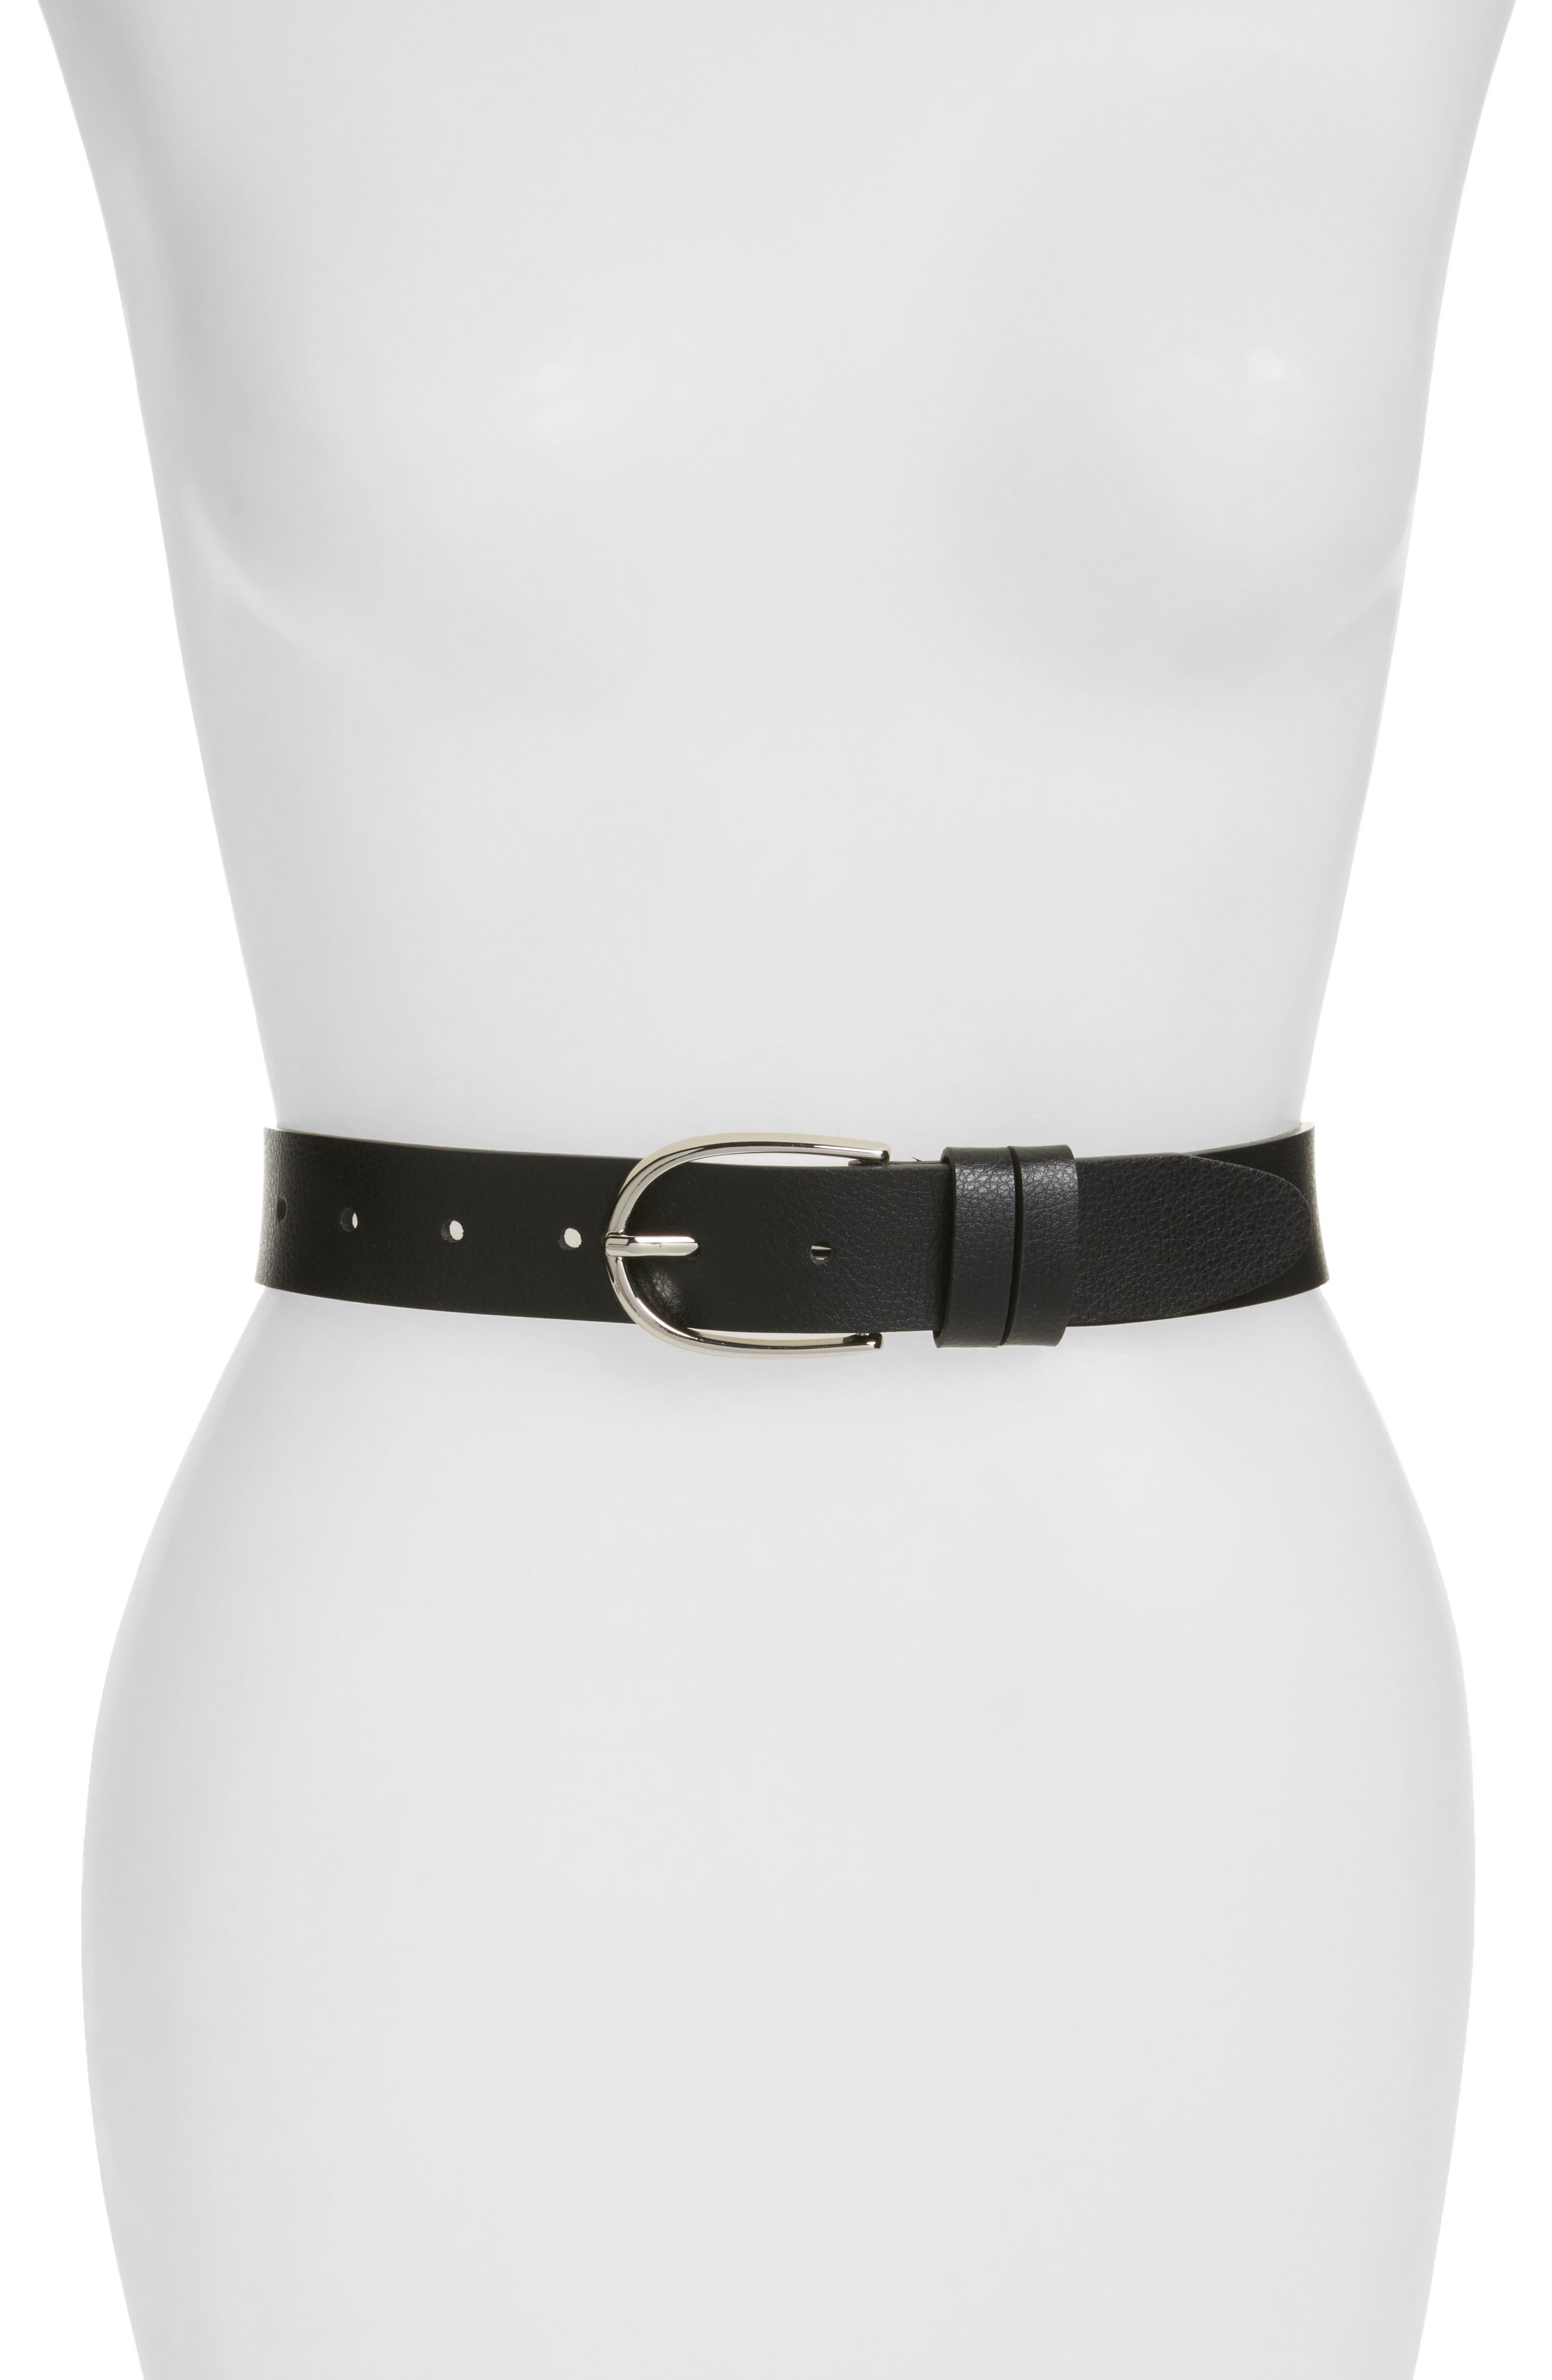 dress belts for women